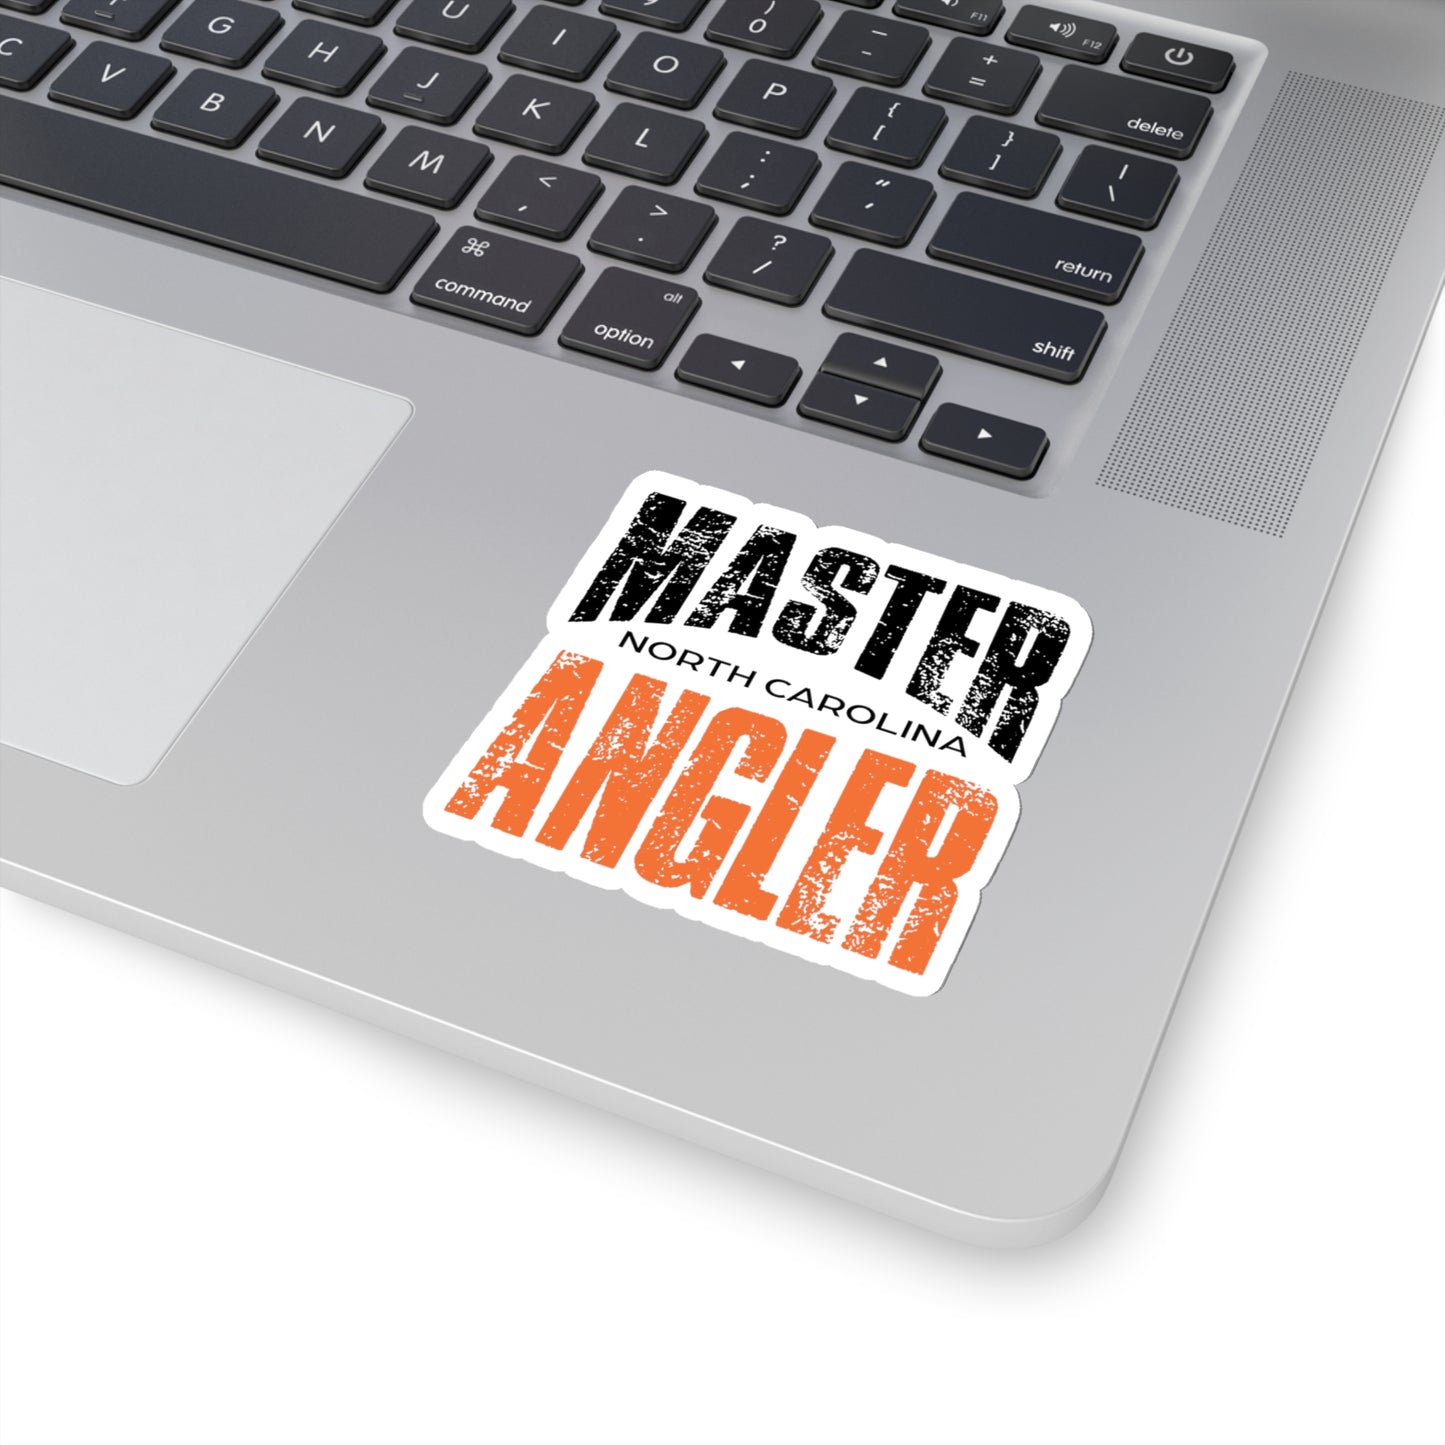 North Carolina Master Angler Sticker - ORANGE